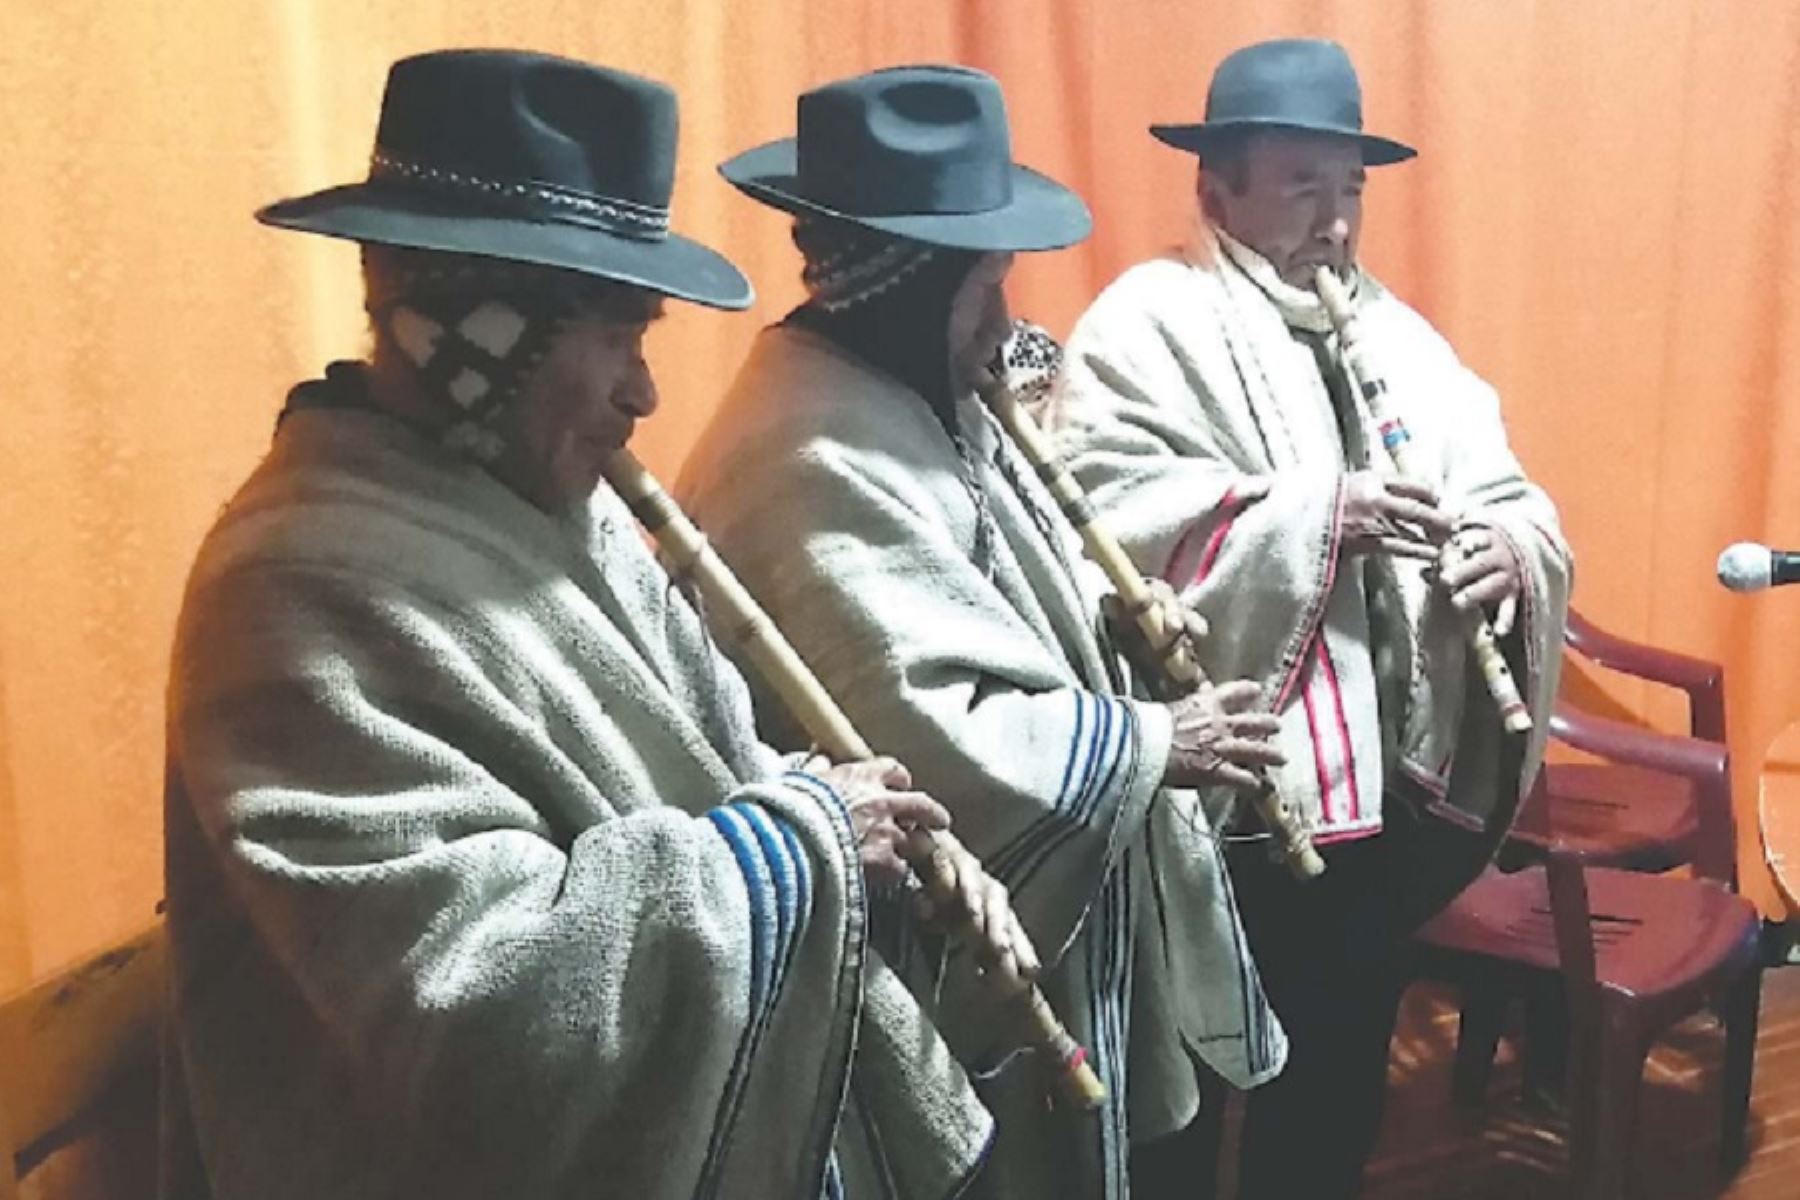 El programa semanal “Curaq tayta mamakunaq rimaynin”, frase quechua que significa “Las palabras de los padres mayores”, va de 5:30 a 6:30 de la mañana y es conducido por personas beneficiarias del Programa Nacional de Asistencia Solidaria Pensión 65,